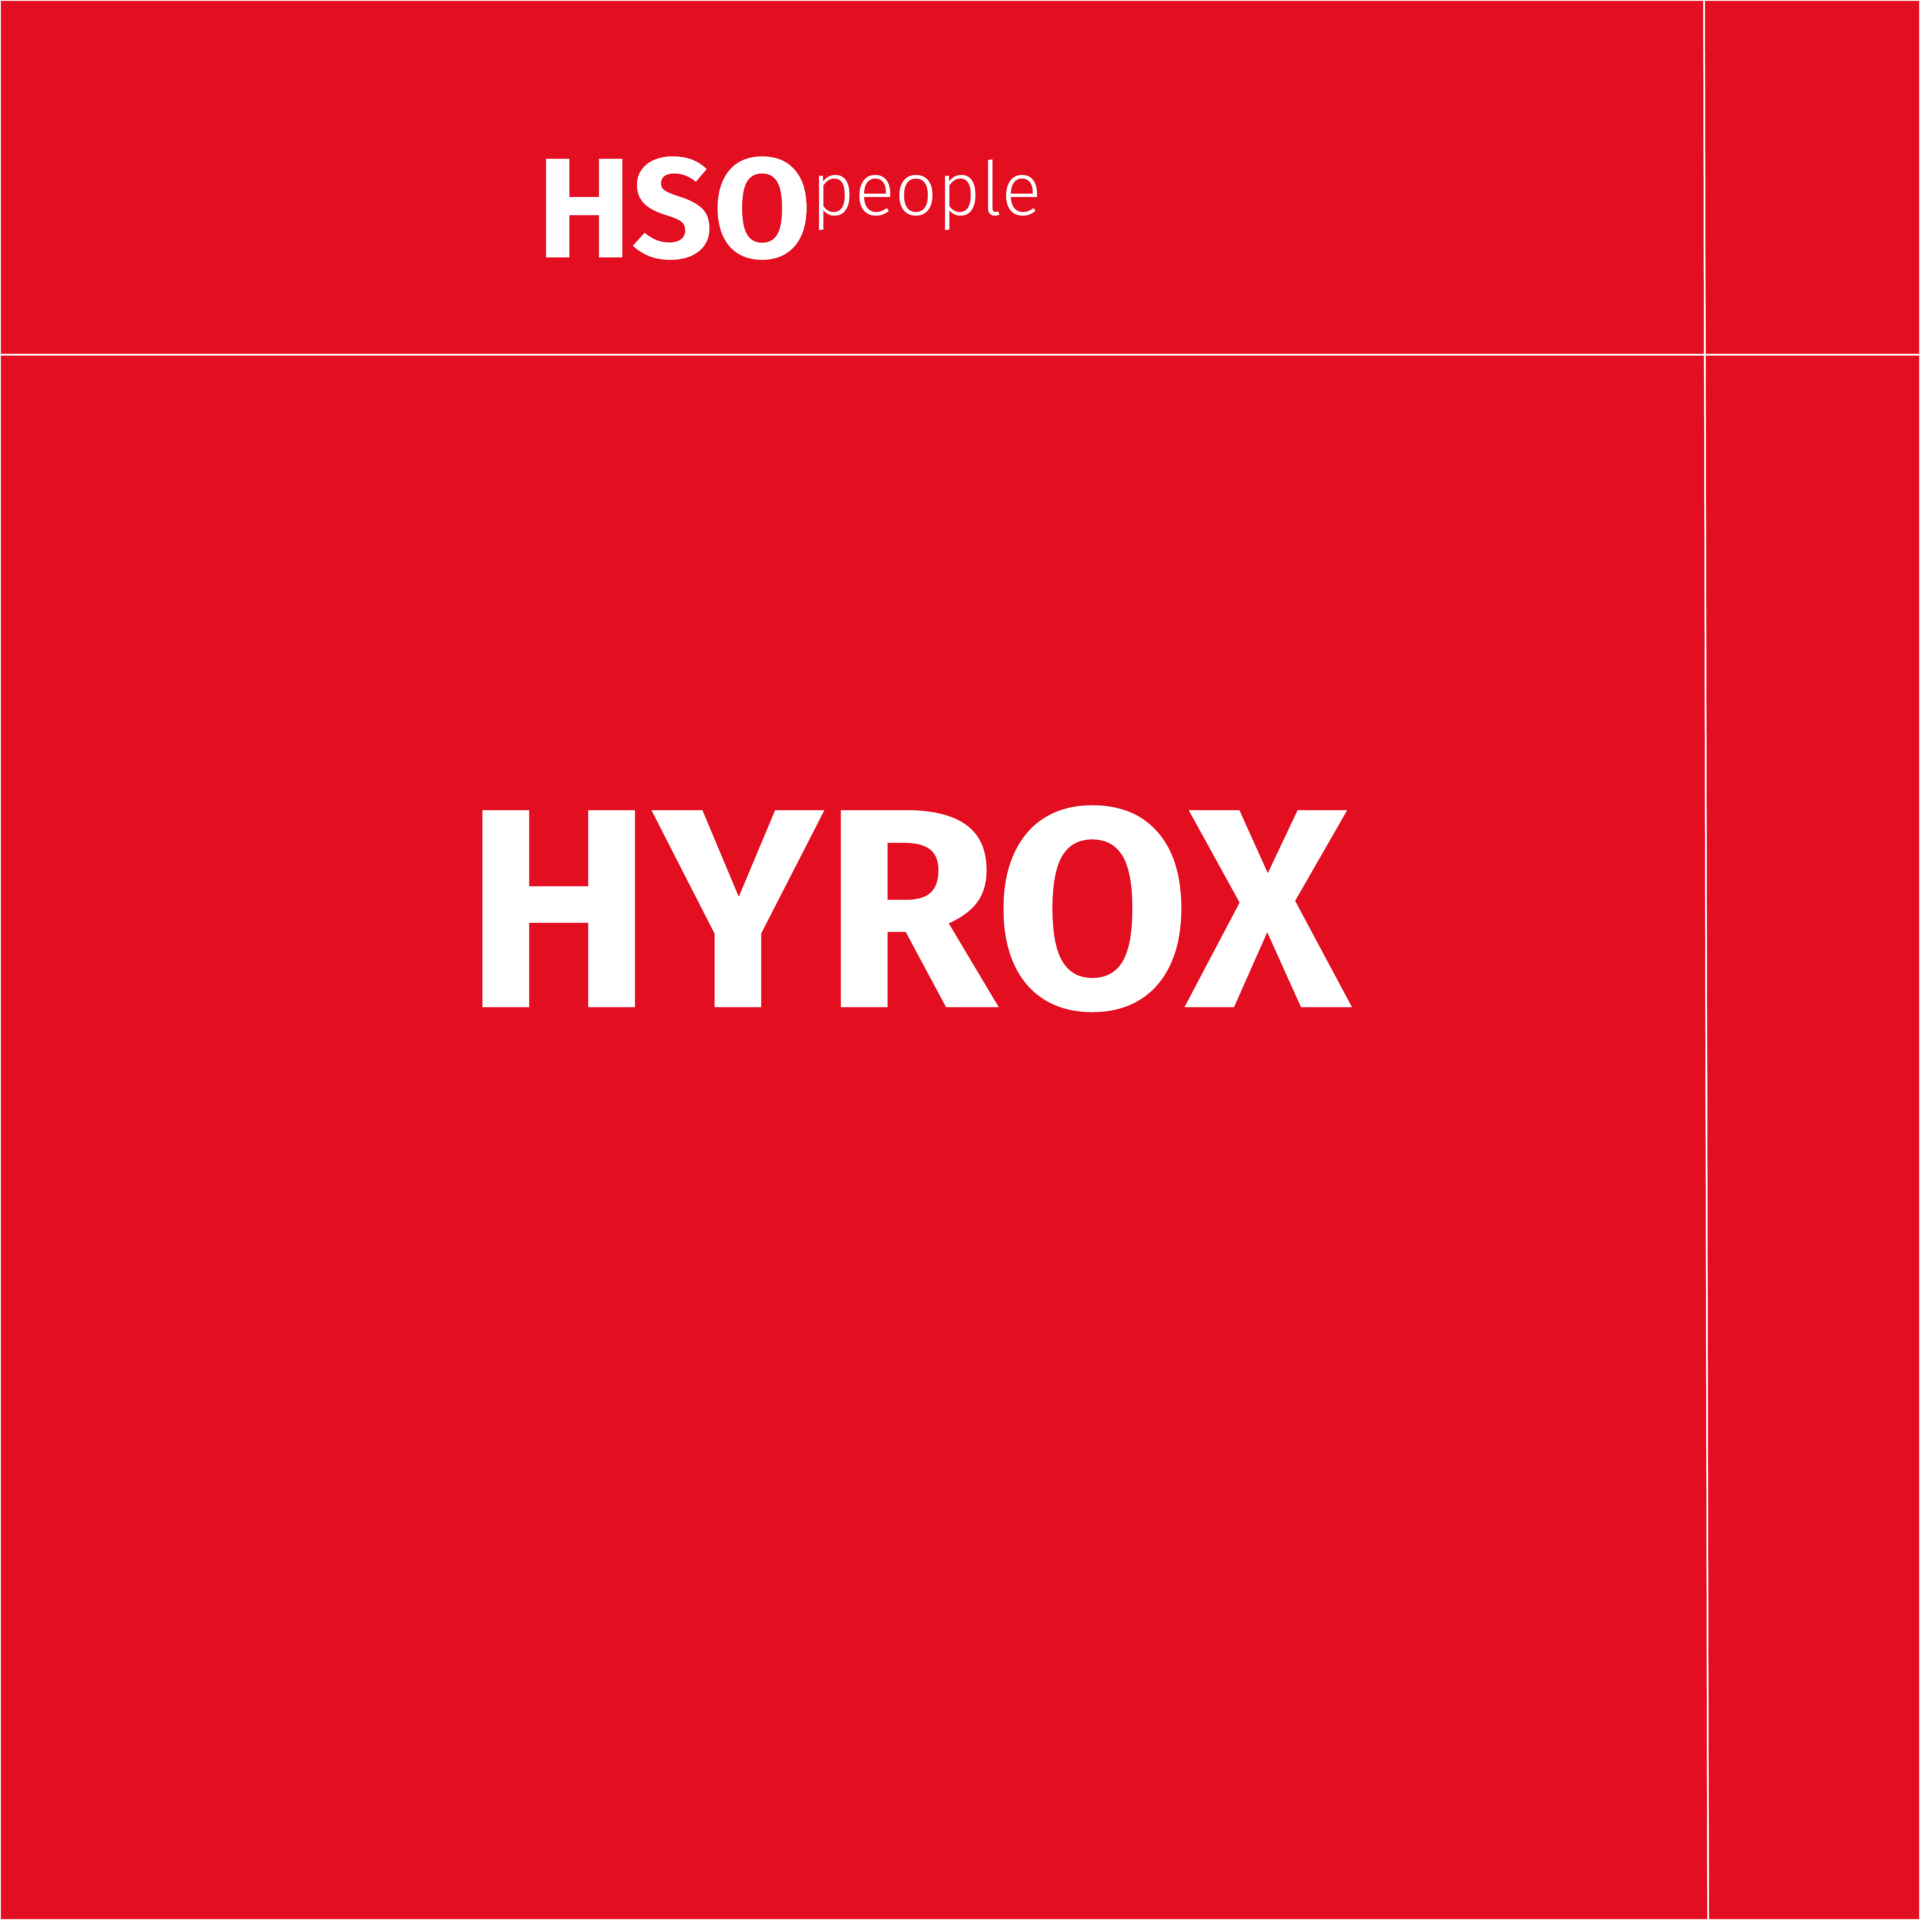 Hyrox: im Interview mit Daniel HSO